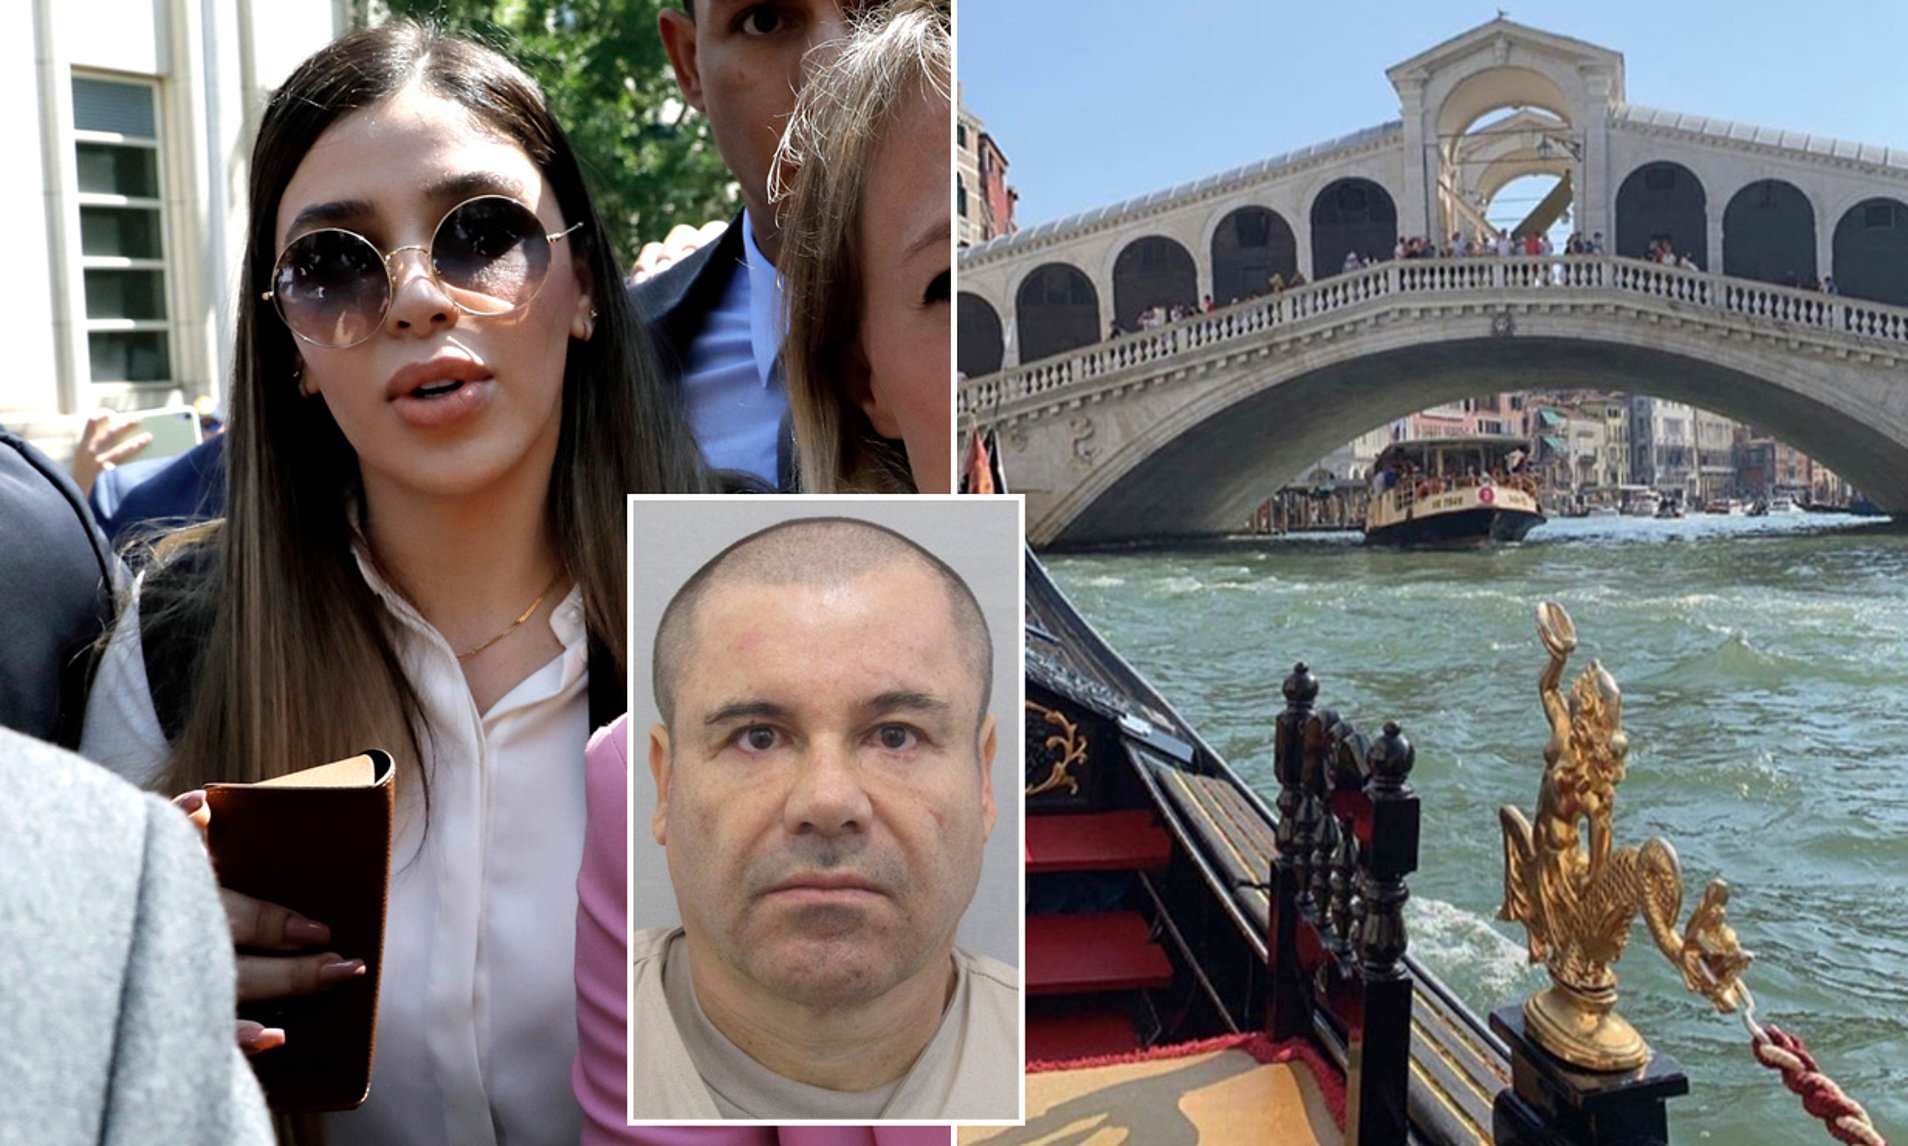 El Chapo bị giam giữ ở nhà tù an ninh nghiêm ngặt bậc nhất, người vợ 29 tuổi thoải mái đi du lịch châu Âu.